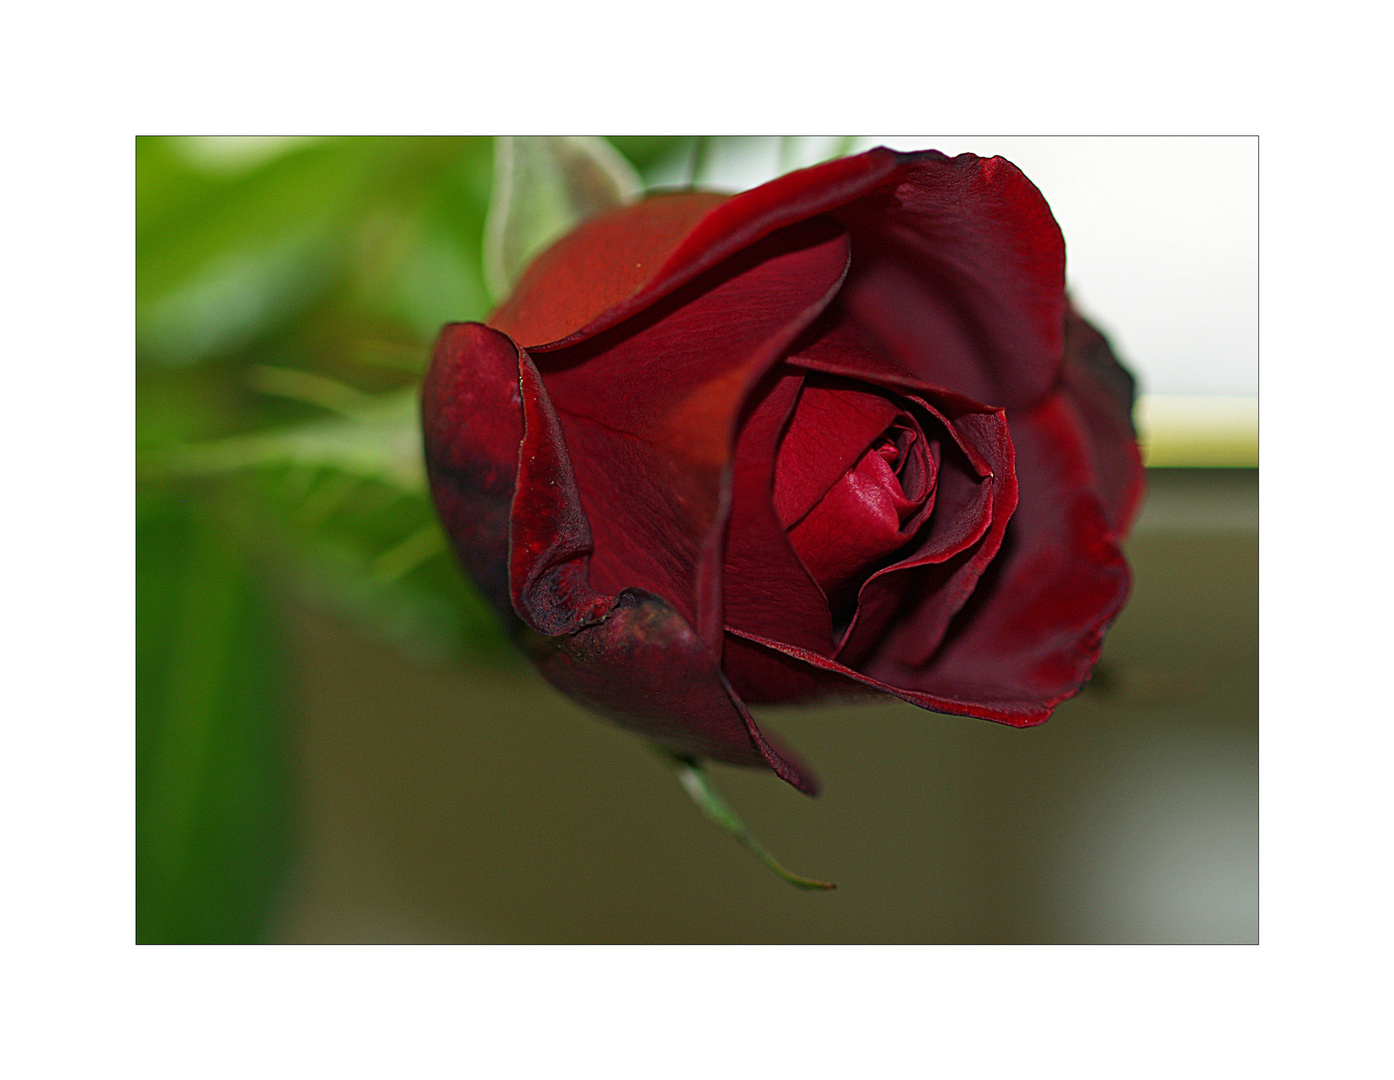 Heute also um einen tag verspätet sende ich euch diese rose als sogenannte valentinsblume